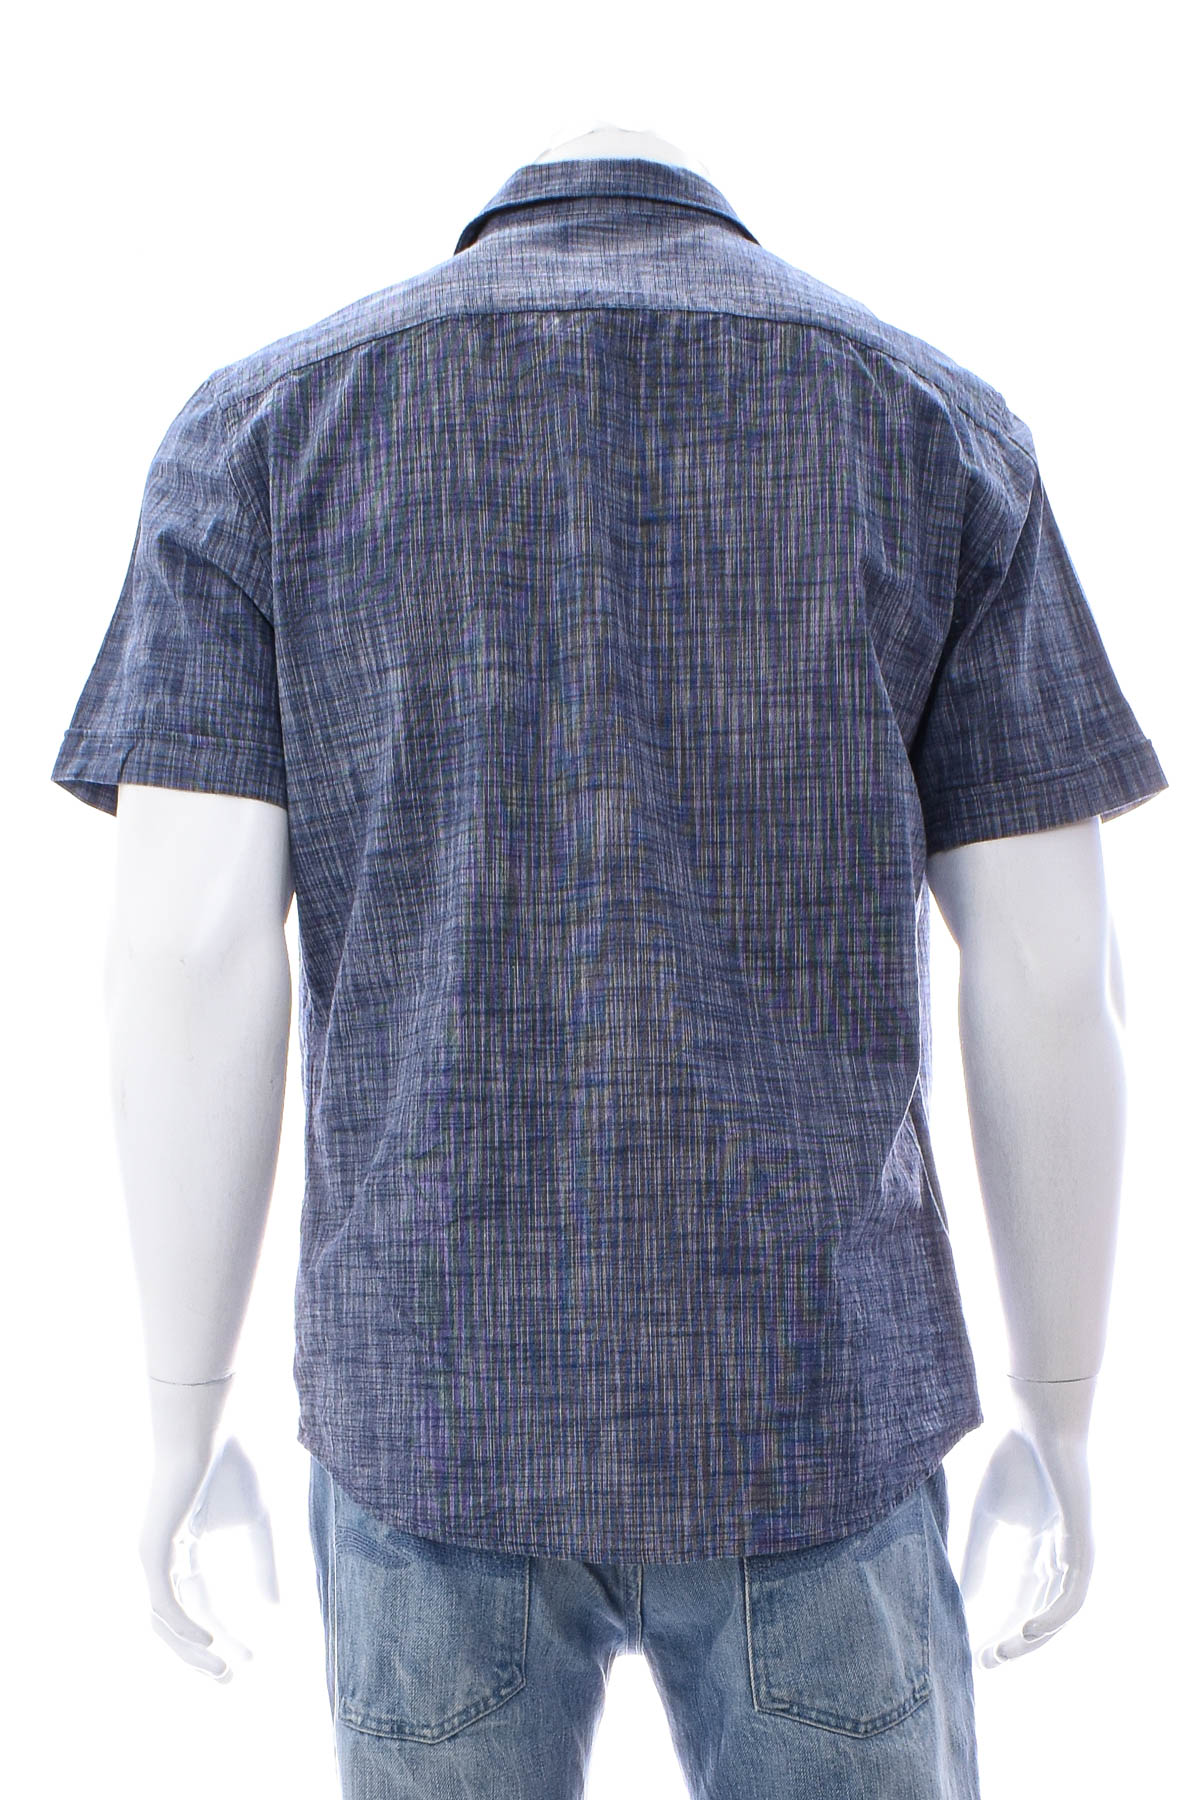 Ανδρικό πουκάμισο - IVEO by jbc - 1